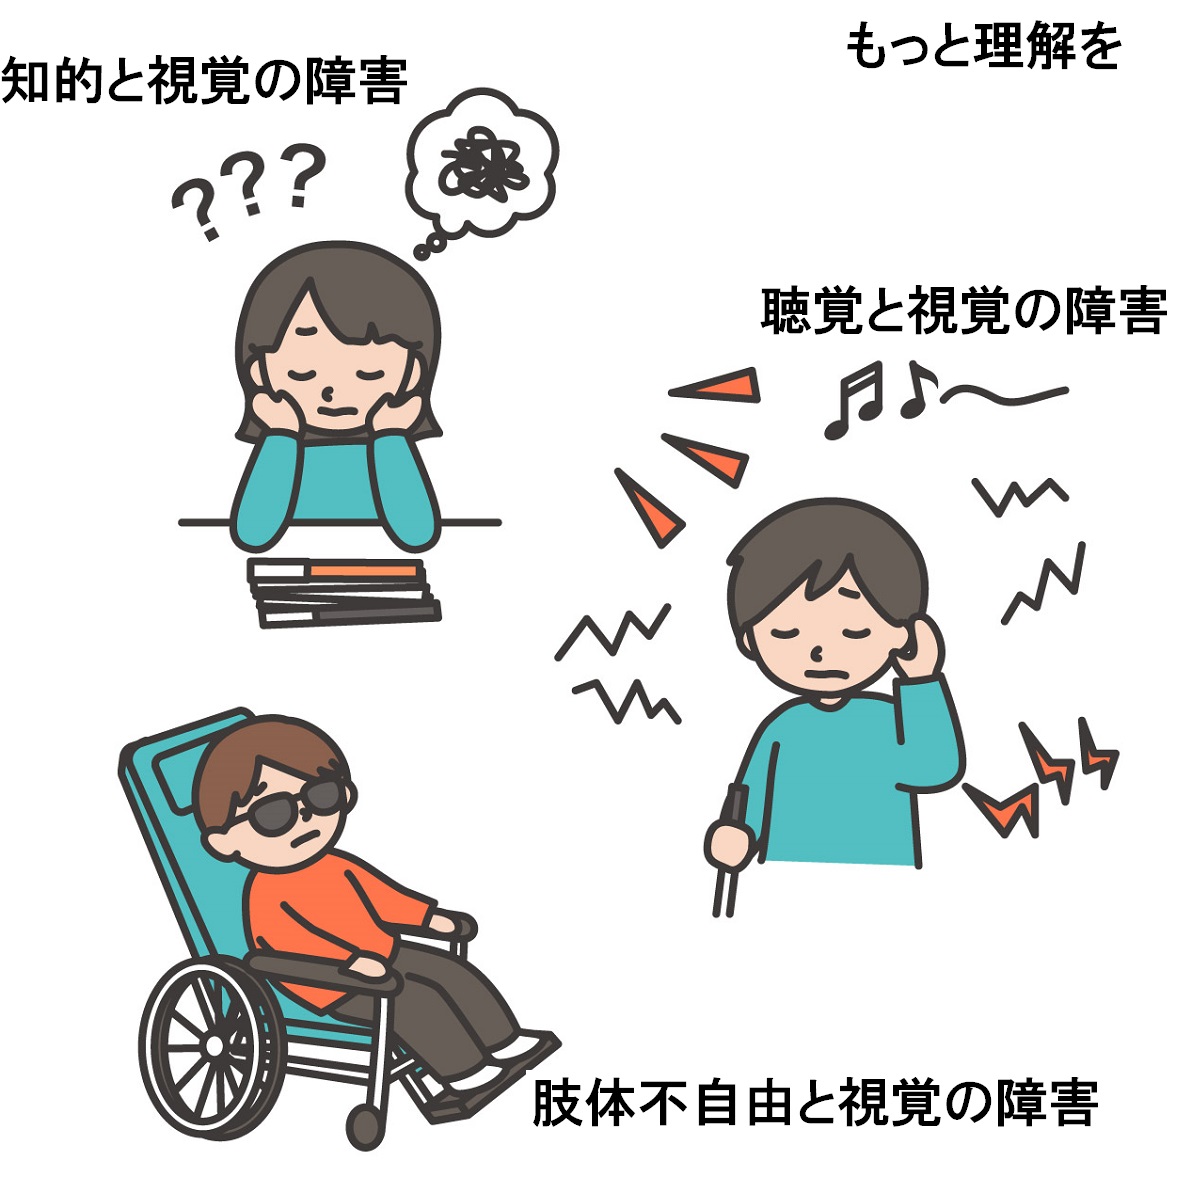 頭の中に？が浮かんでいる女の子：知的と視覚の障害。聞き取りにくそうにしている男の子：聴覚と視覚の障害。リクライニングタイプの車いすに座っている男の子：肢体不自由と視覚の障害。テキスト：もっと理解を。